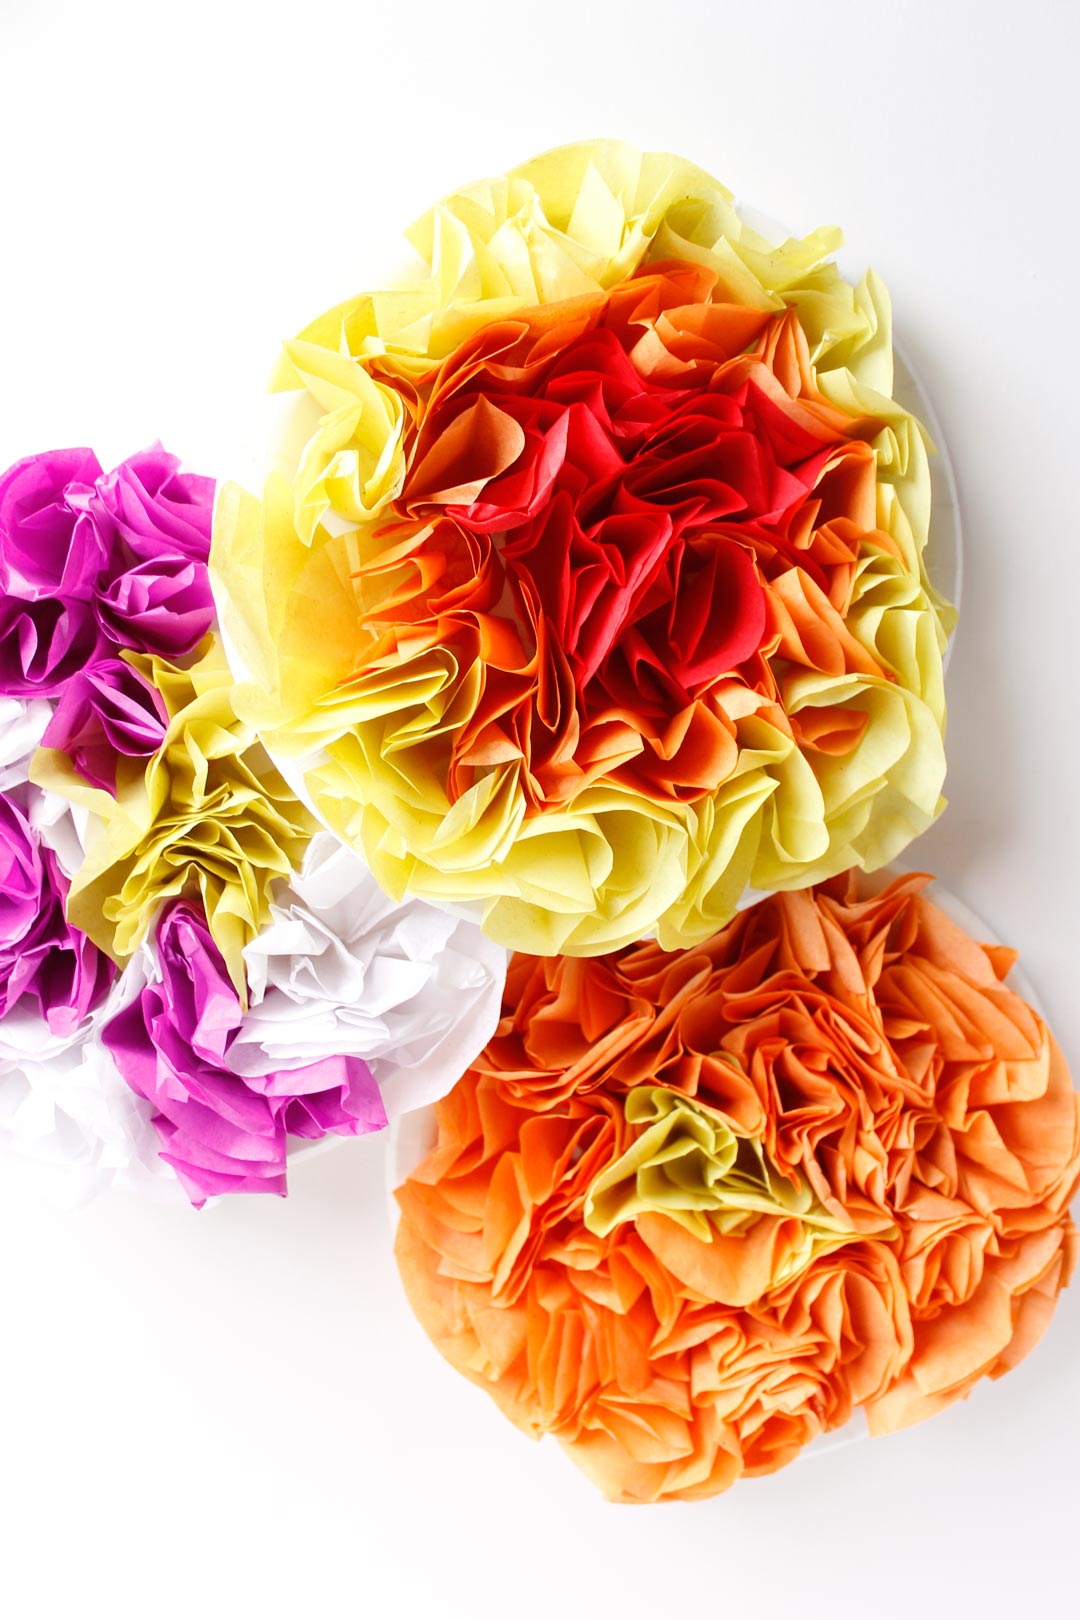 Tissue Paper Flower Craft